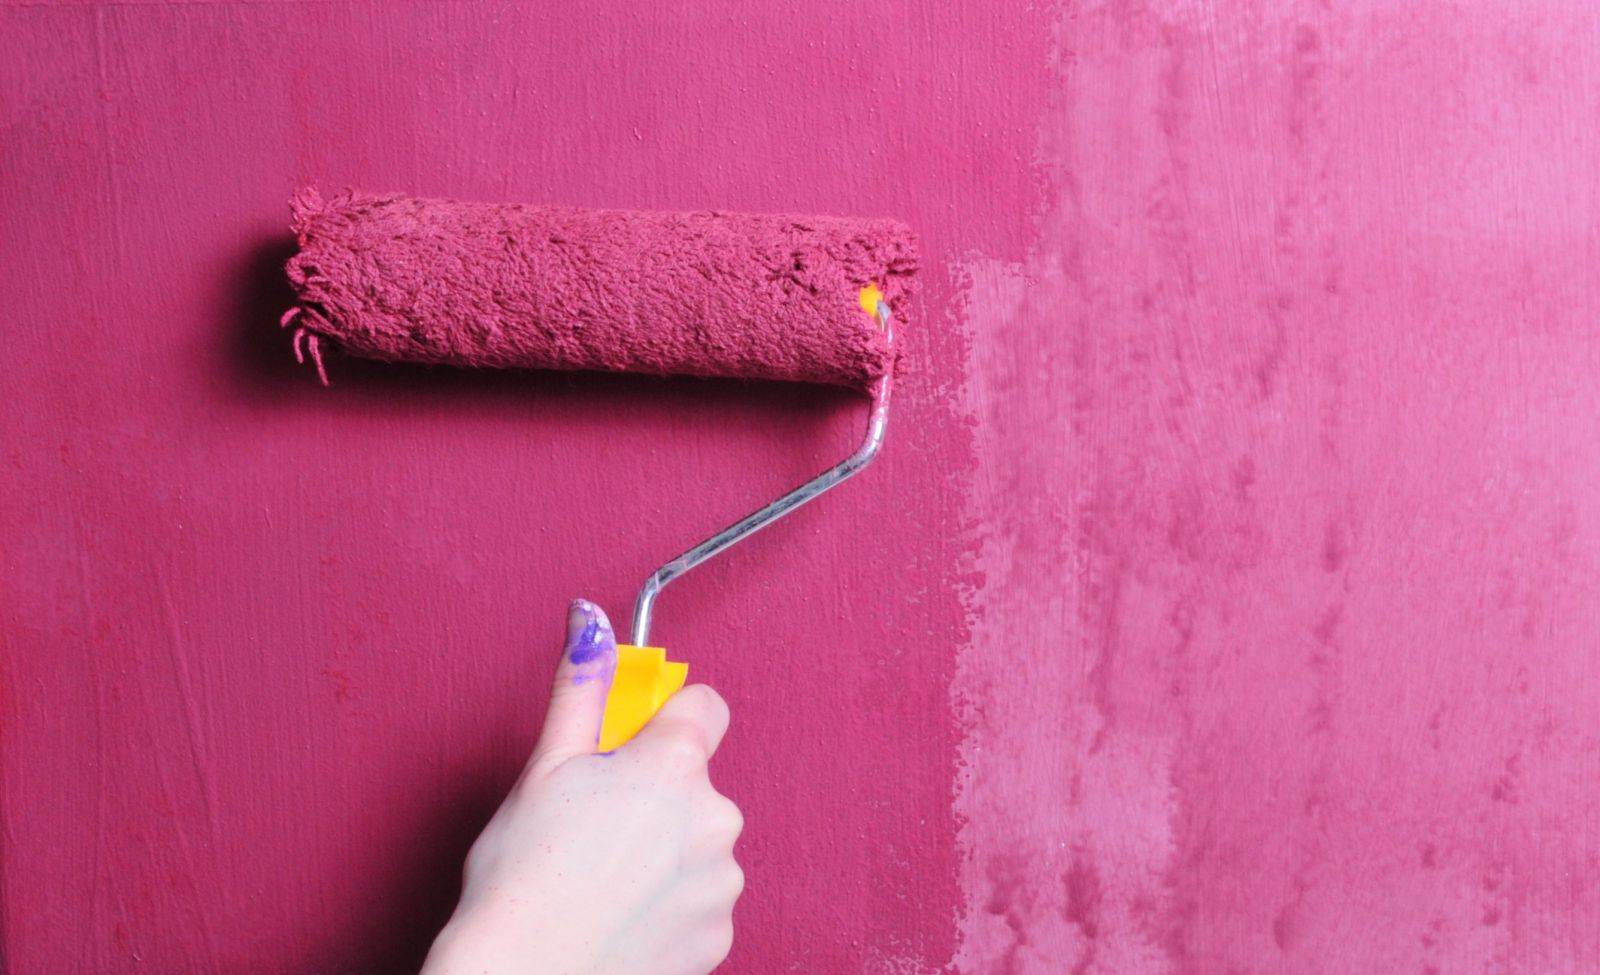 Обои или покраска стен — плюсы и минусы?